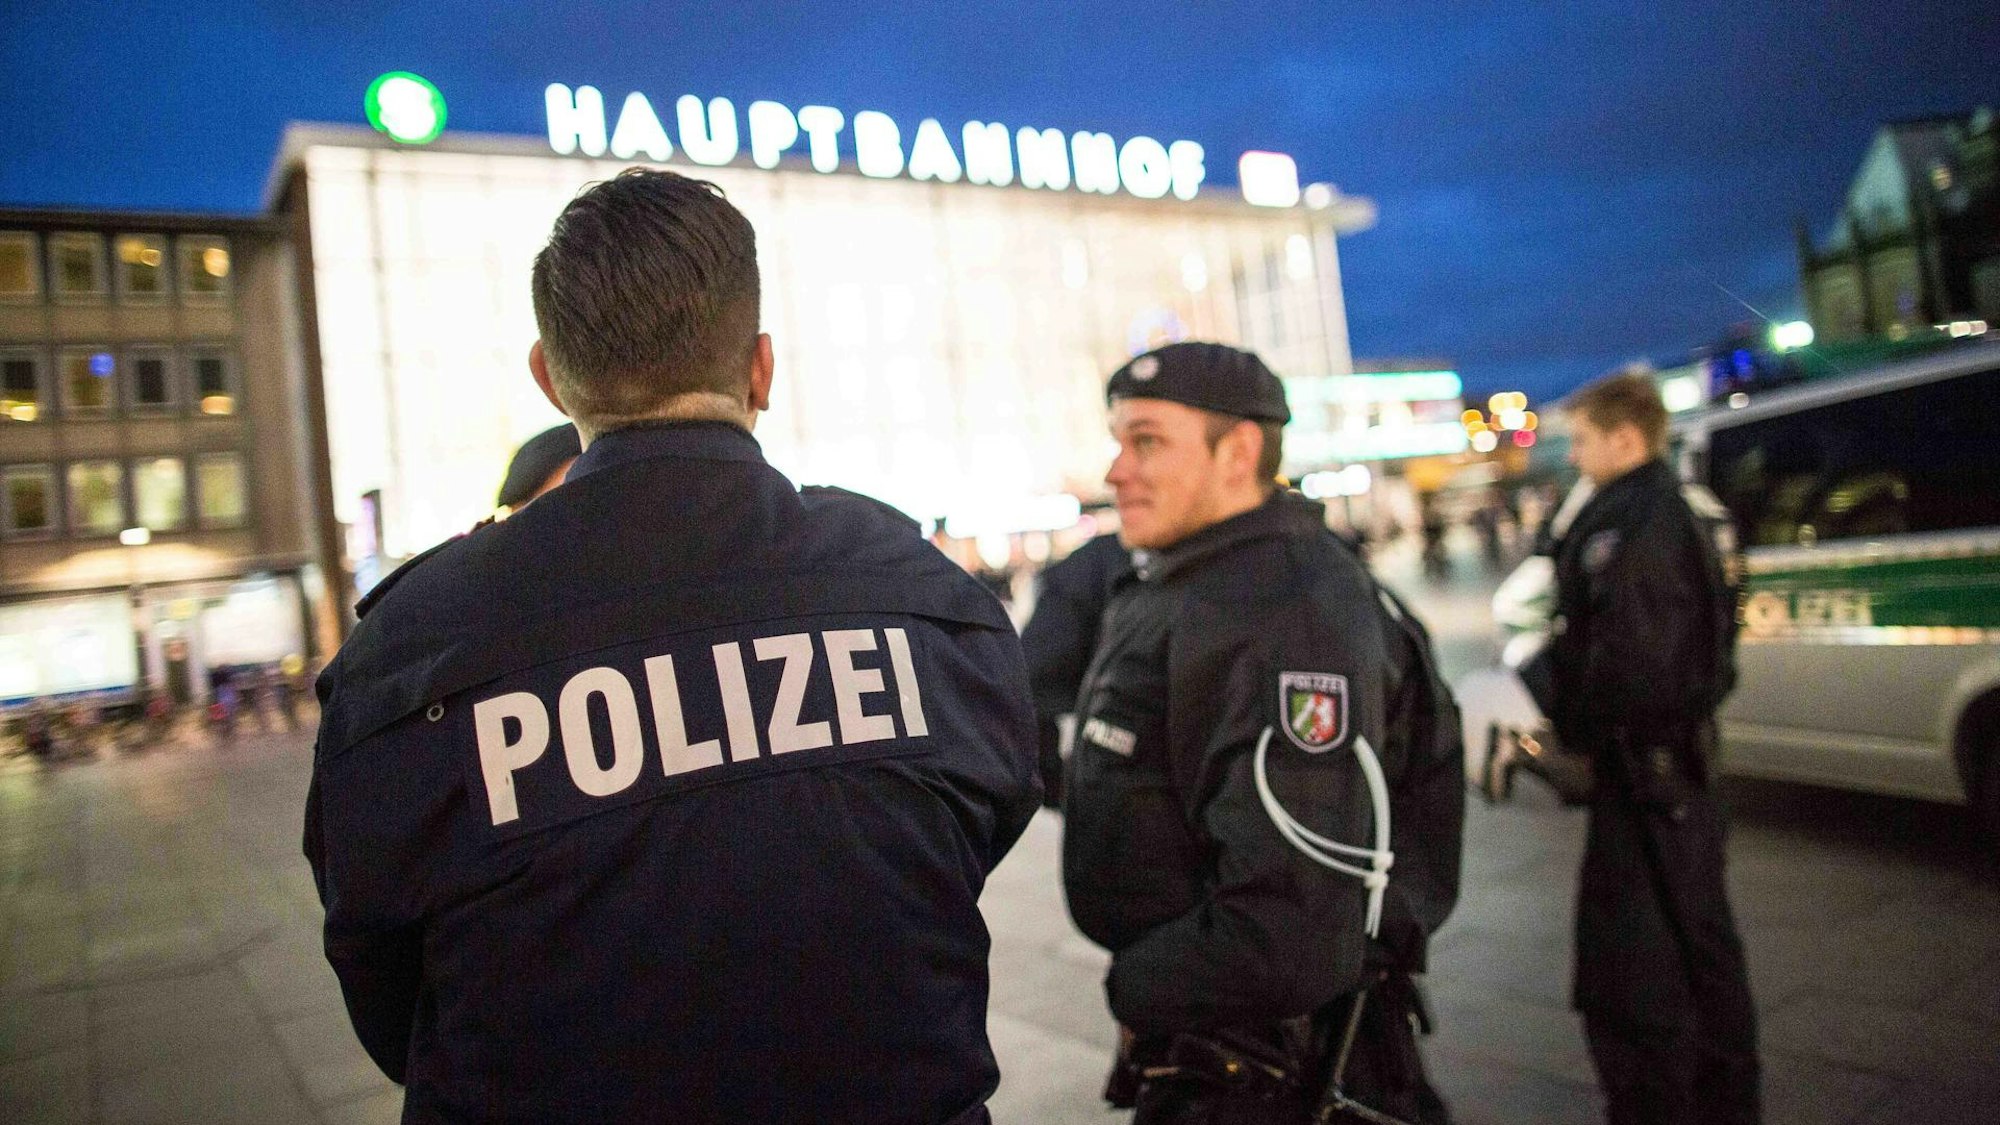 Kölner Polizisten im Einsatz am Kölner Hauptbahnhof